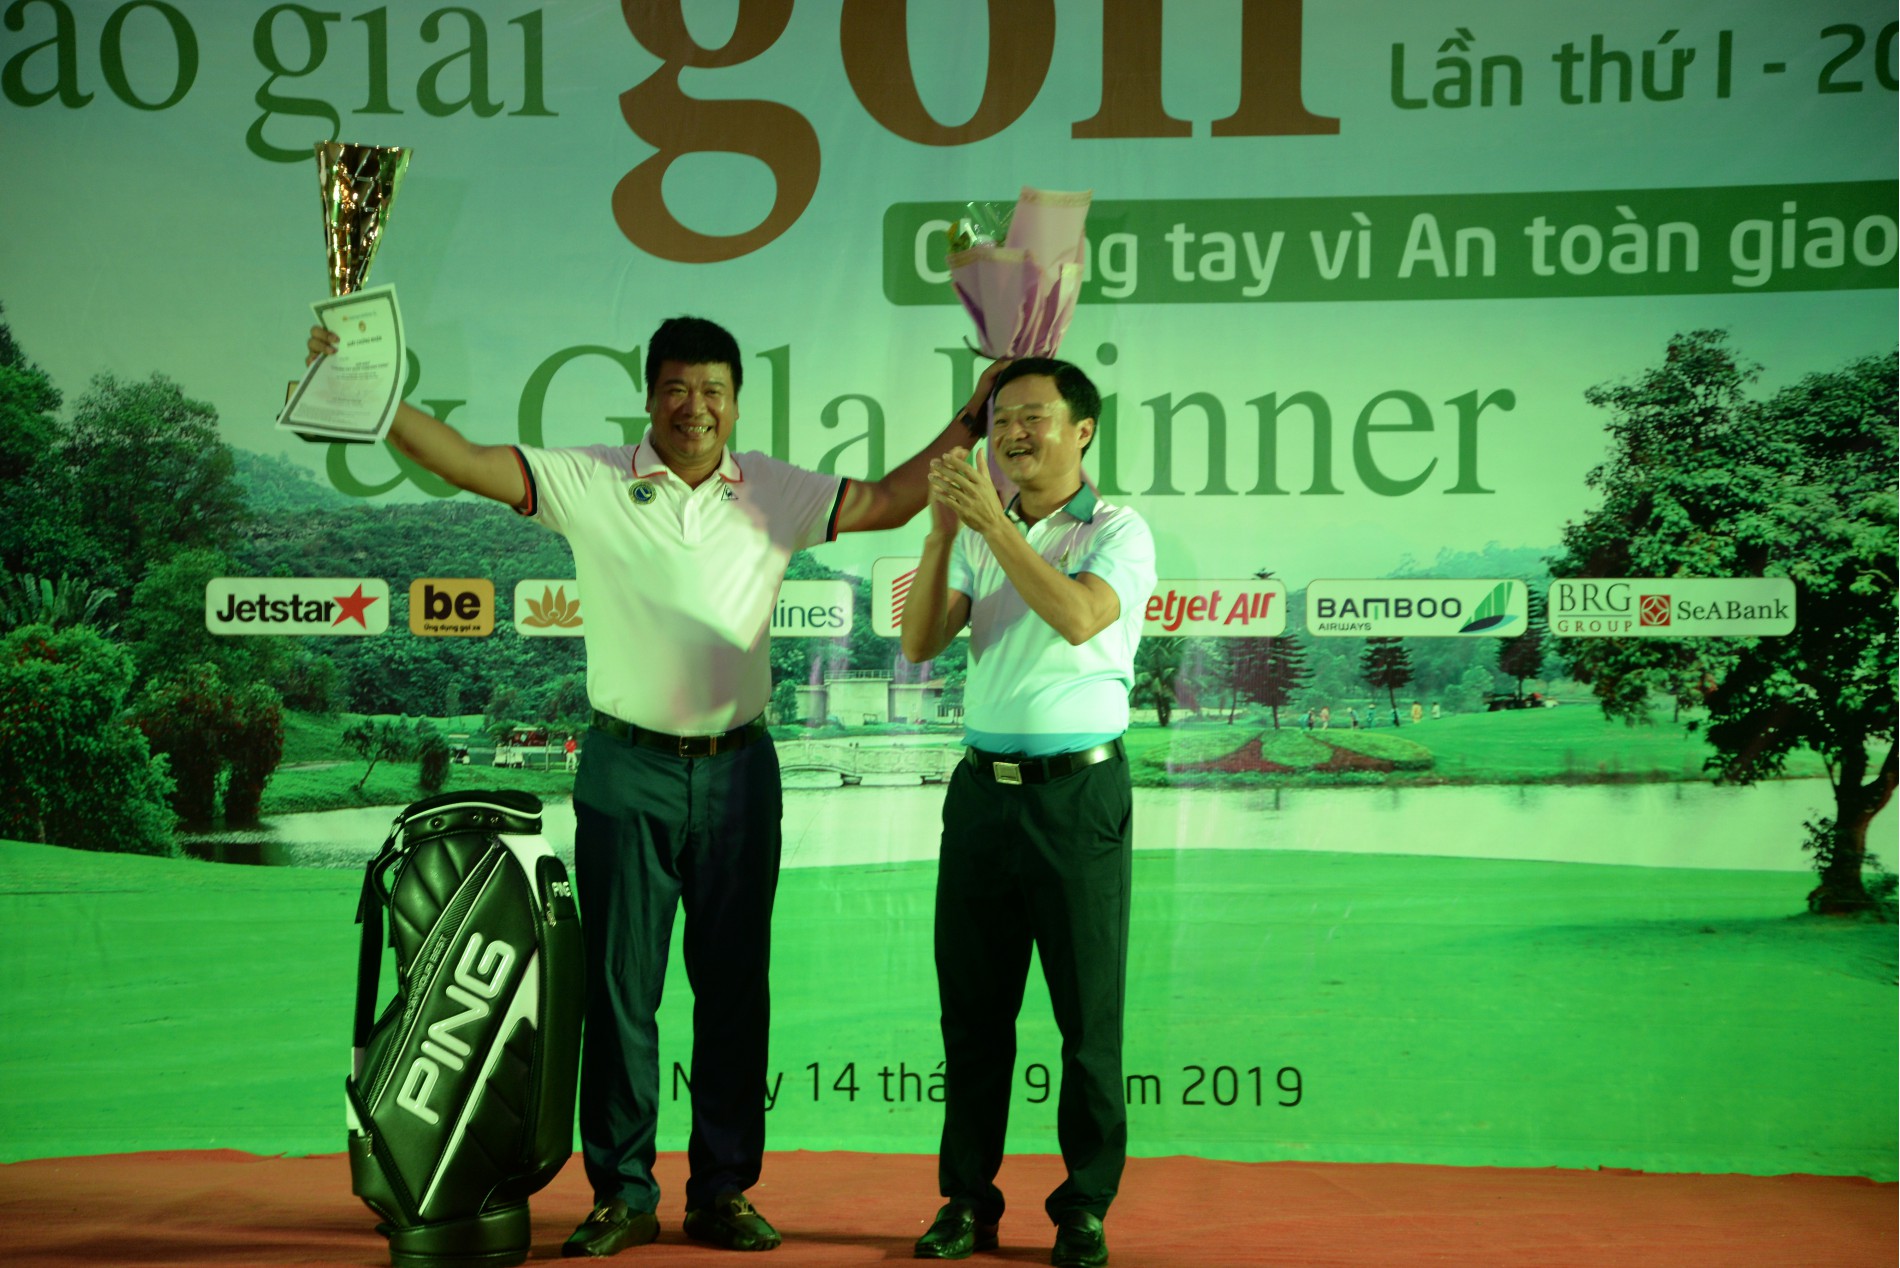 Tổng Biên tập Báo Giao thông Nguyễn Bá Kiên trao giải Best Gross cho golfer Phạm Minh Phúc